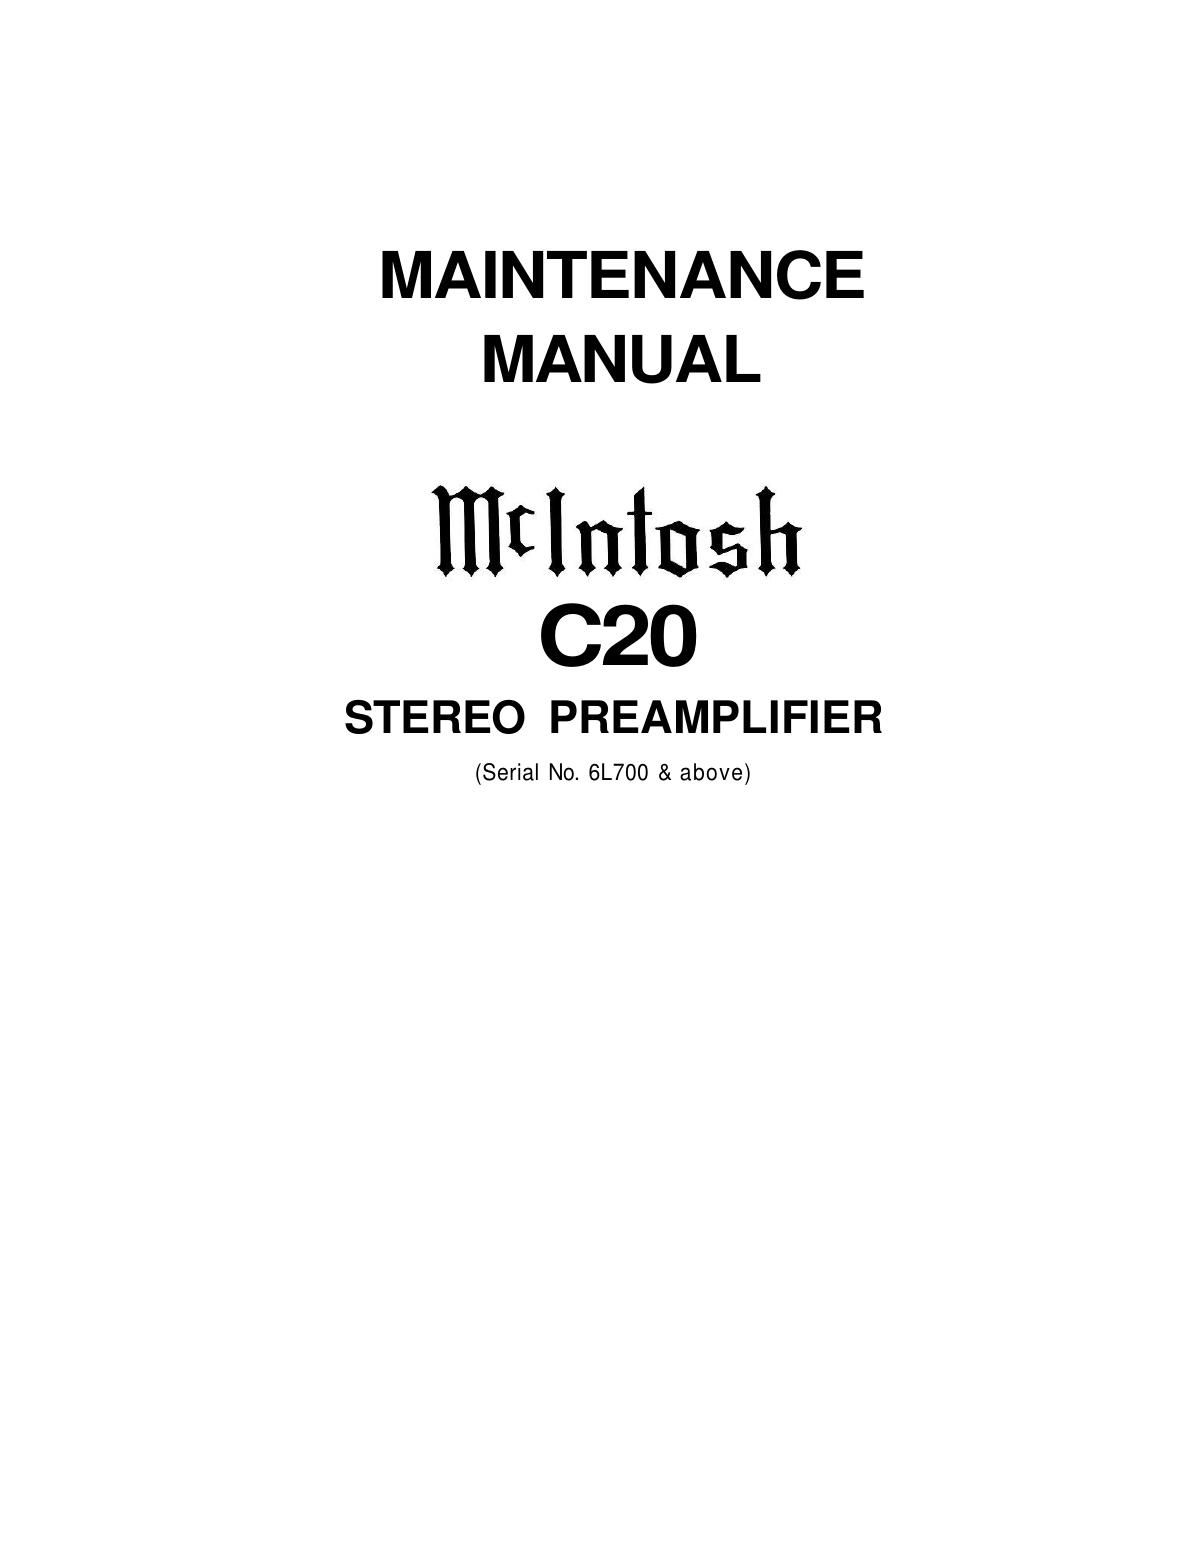 McIntosh C20 Service Manual